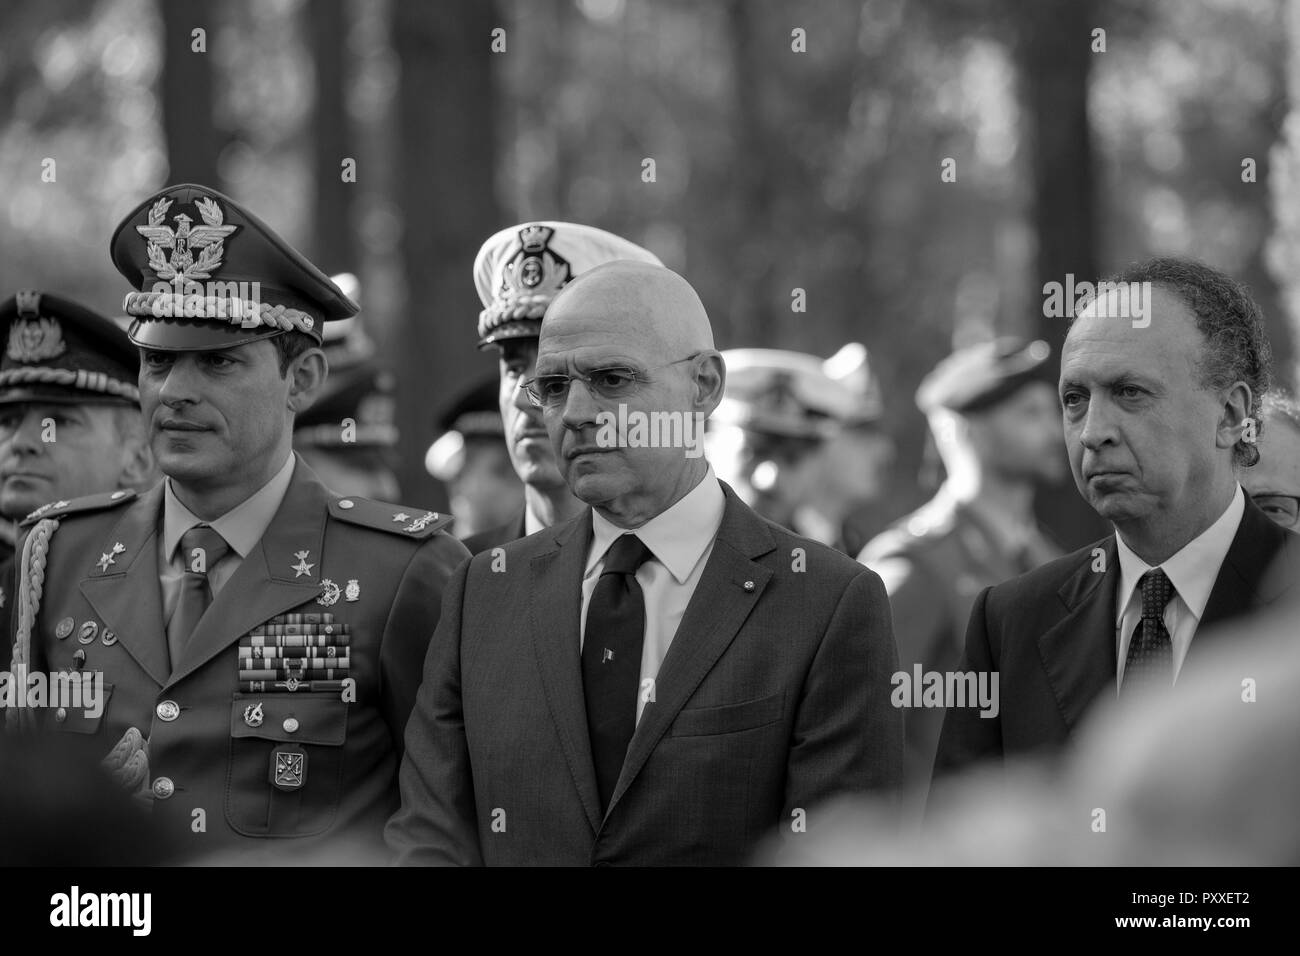 Die 2018 Italienisch Service der Erinnerung - Bild rechts - Marco Villani, Generalkonsul. Bild mitte UK italienischen Botschafter Raffaele Trombetta Stockfoto